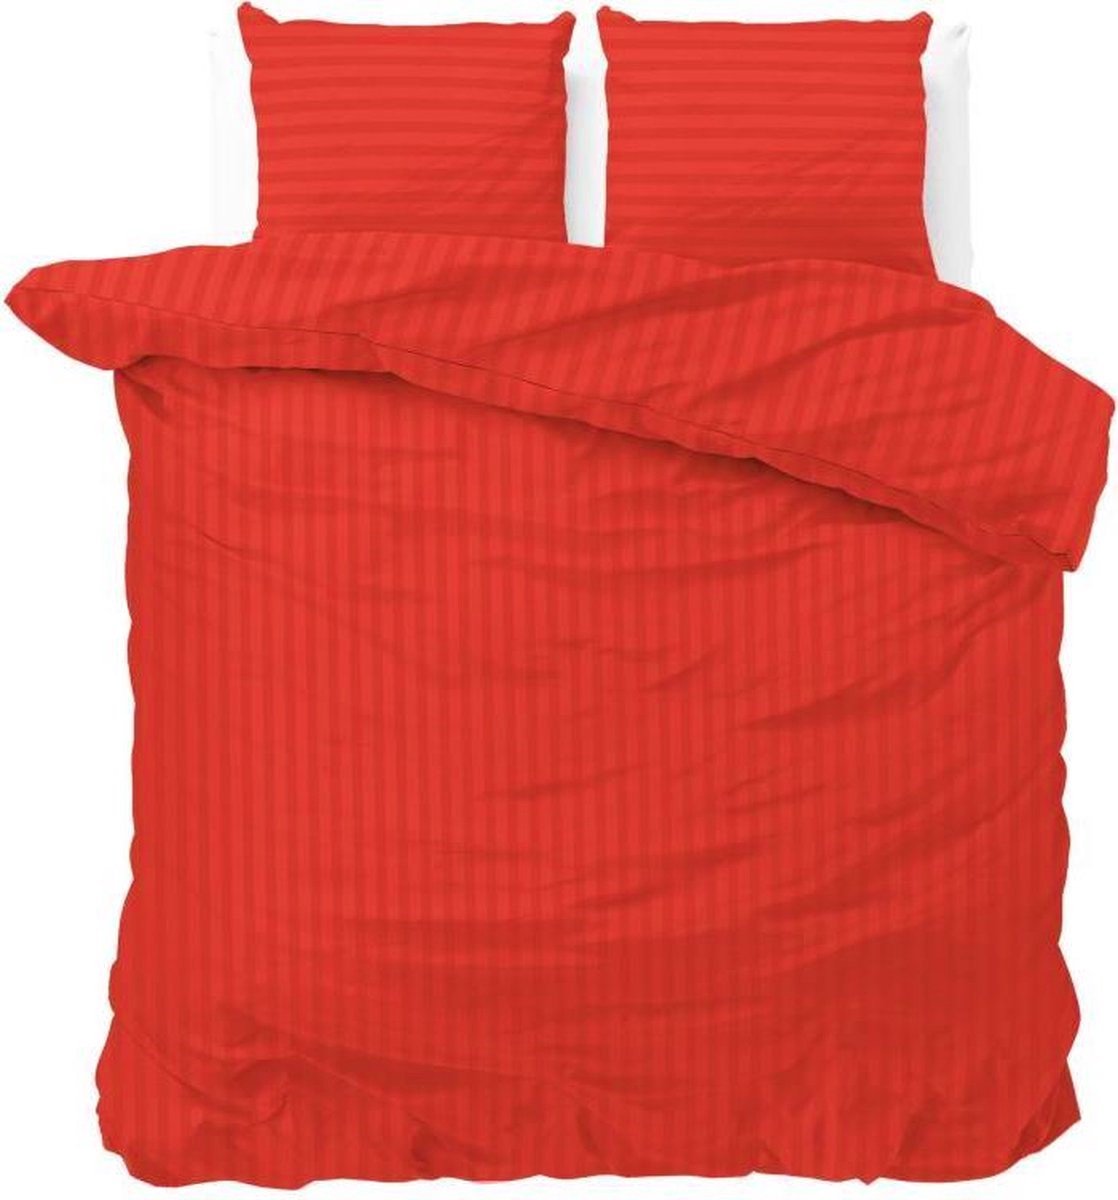 2-persoons dekbedovertrek (dekbed hoes) helder rood gestreept met fijne rode strepen / banen tweepersoons 200 x 220 cm (beddengoed cadeau idee slaapkamer!)